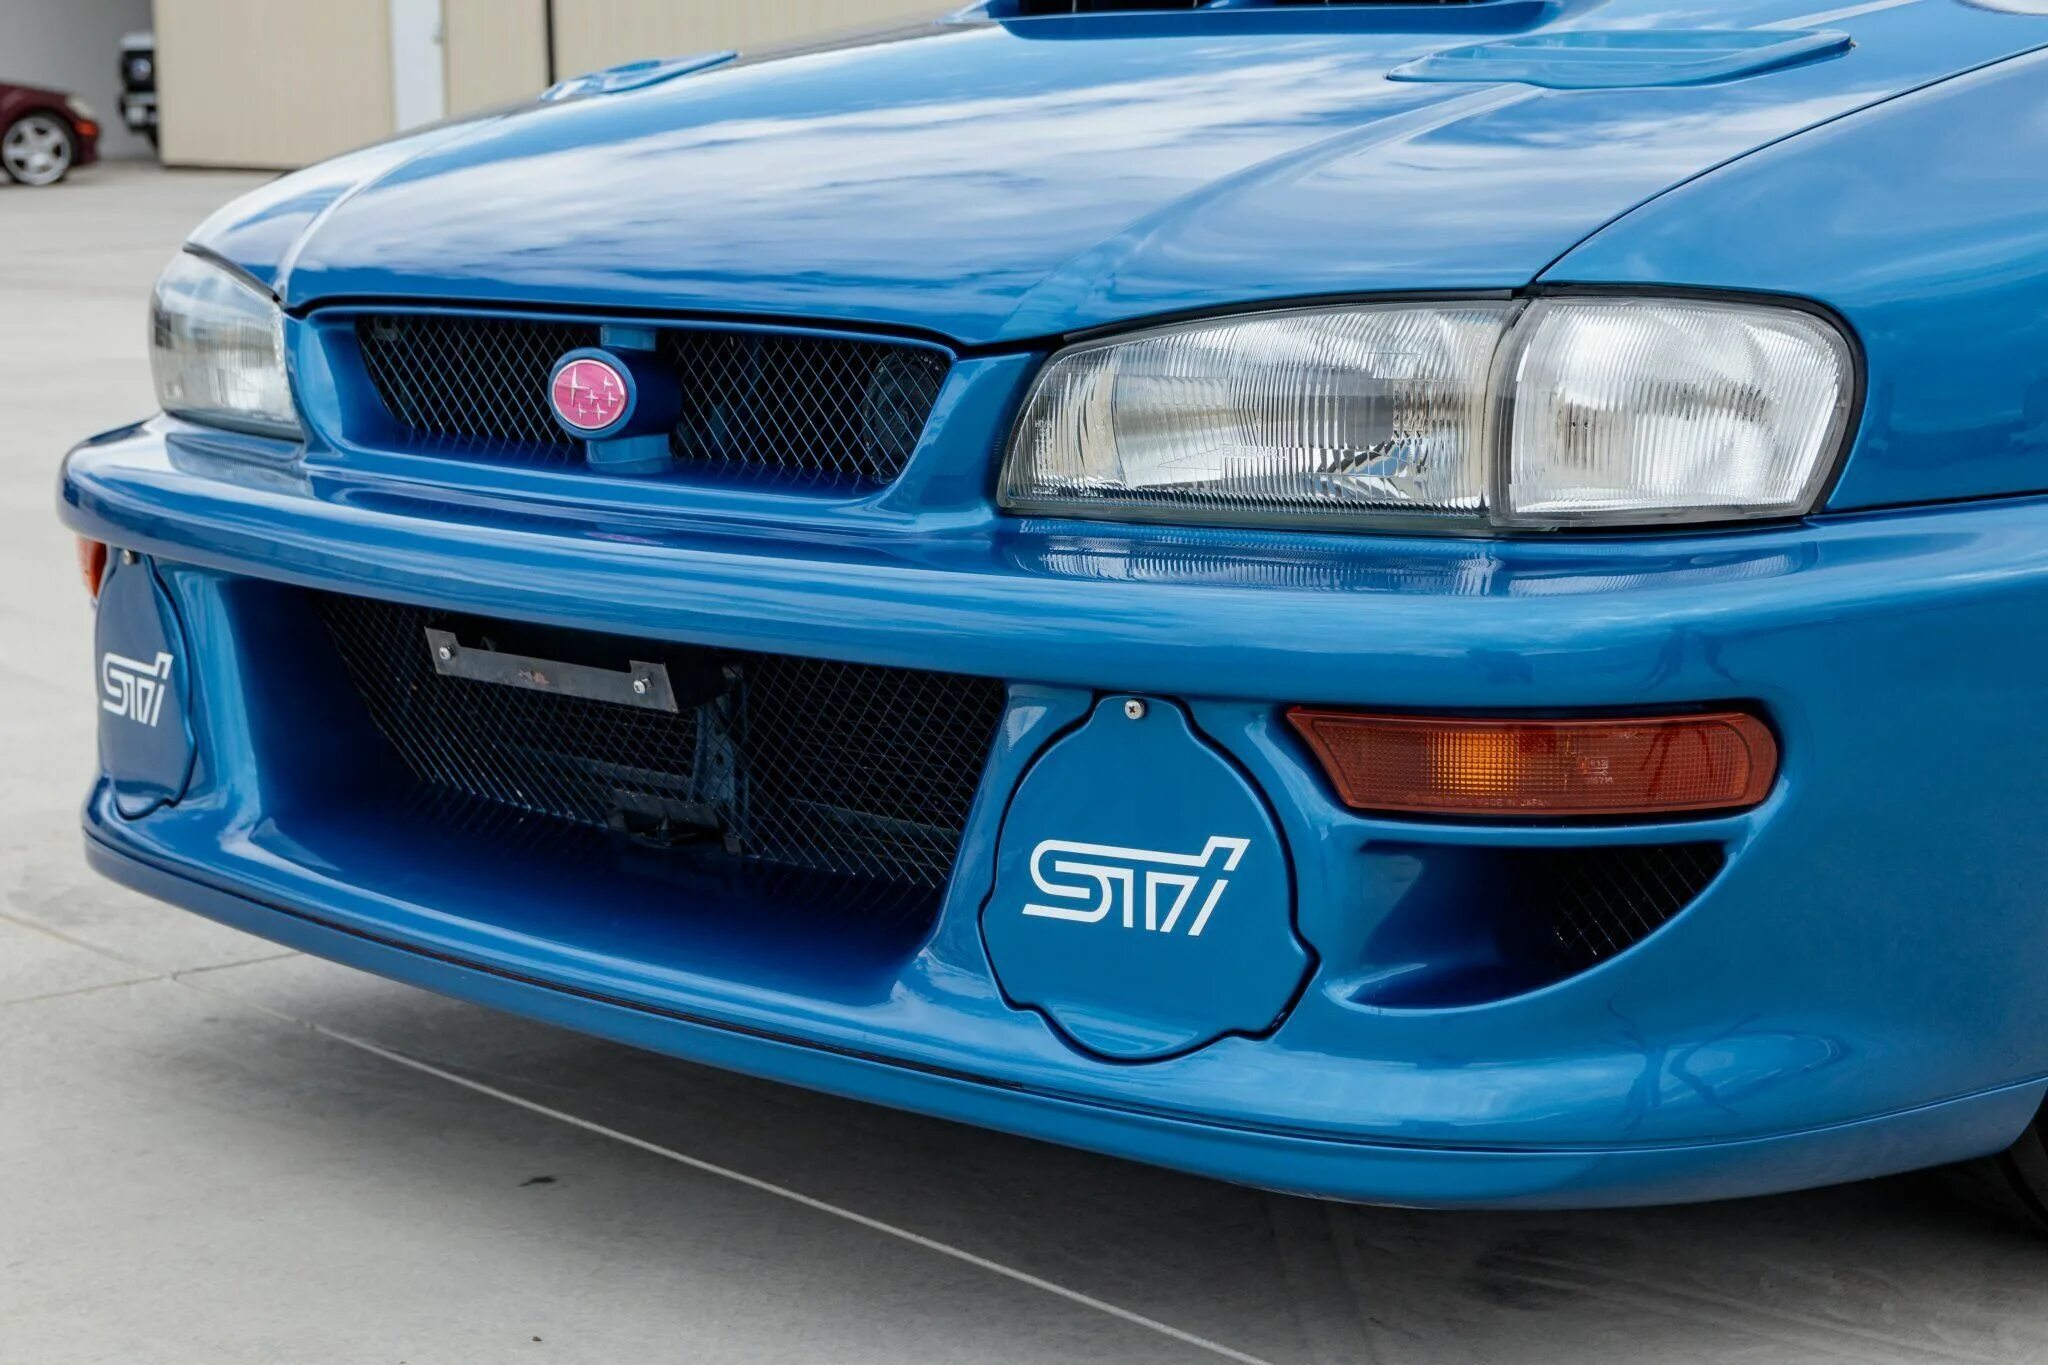 Субару Импреза 22b STI. Субару Импреза WRX STI 1998. Subaru Impreza 22b STI 1998. Subaru Impreza 22b STI. Дром ру субару